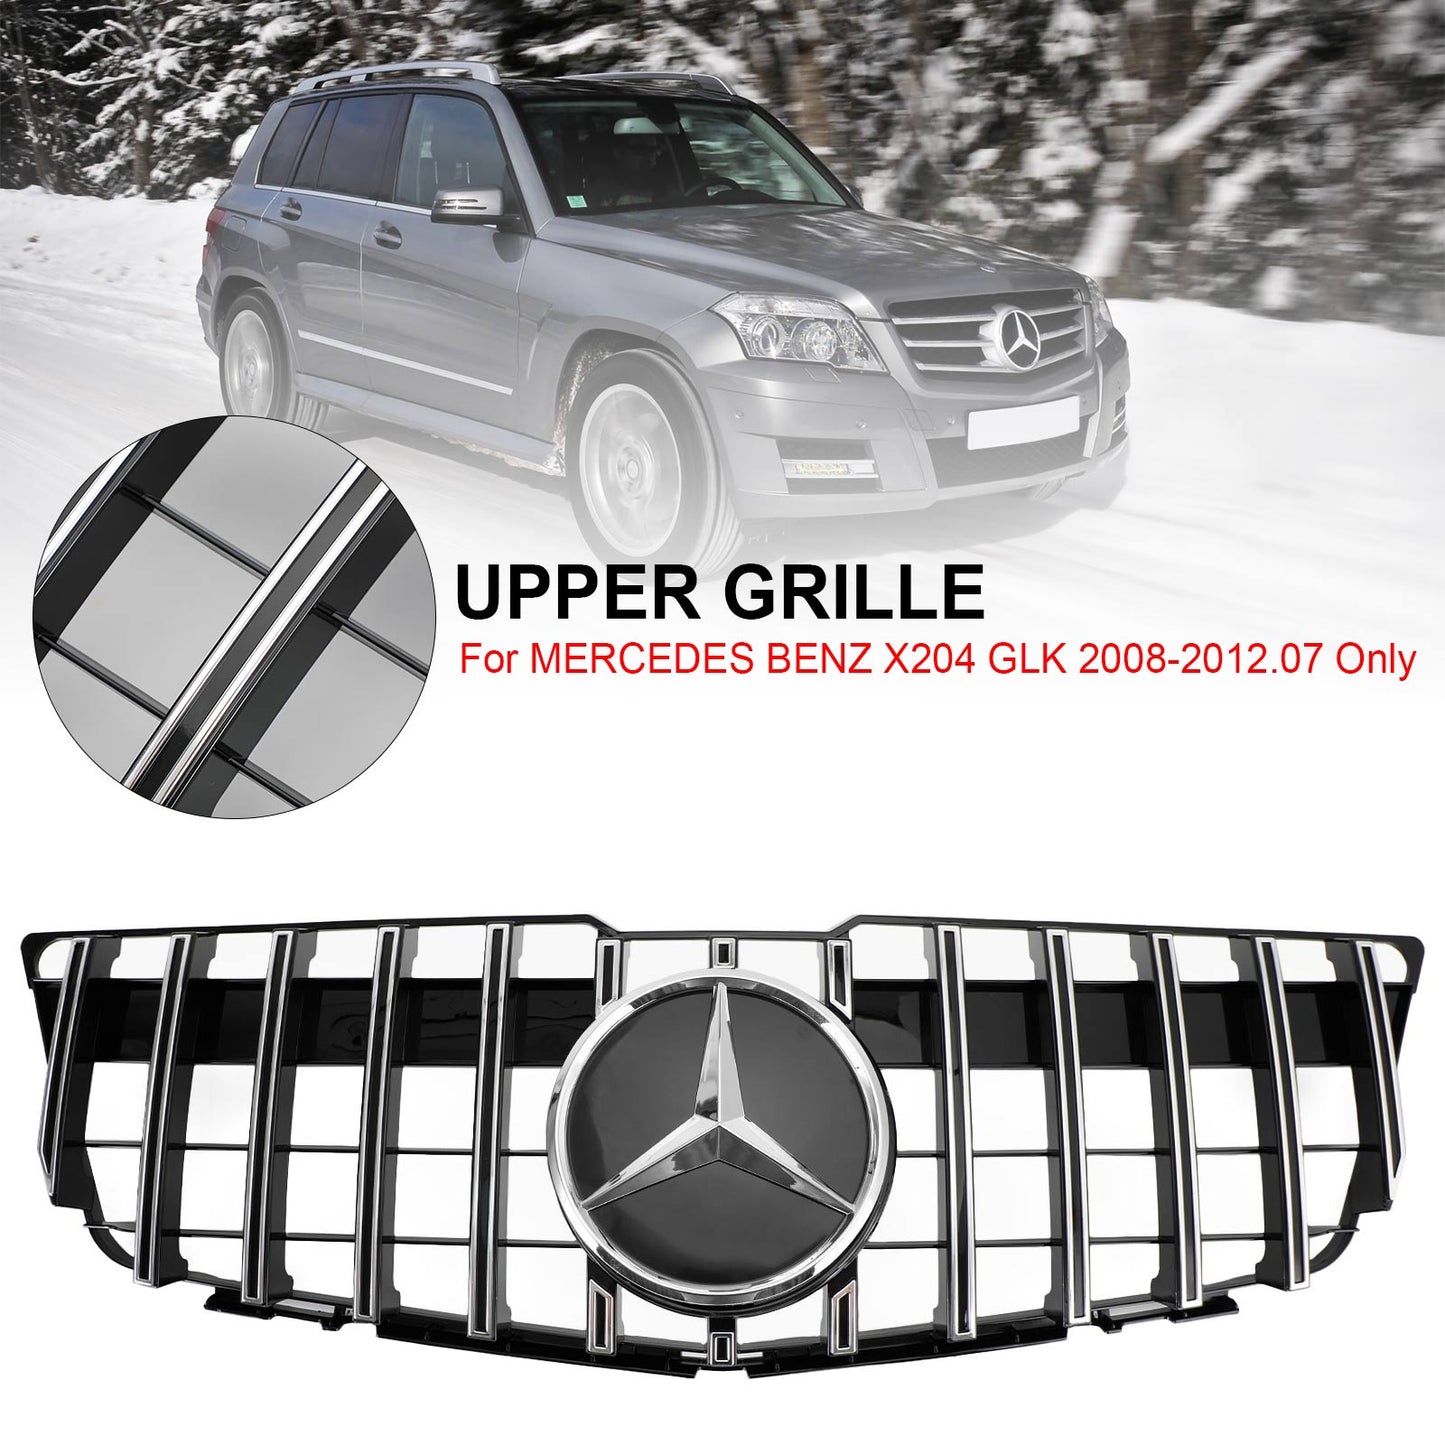 Grilla superiore per paraurti anteriore Mercedes-Benz GLK X204 2008-2012 GT Style 83222277300